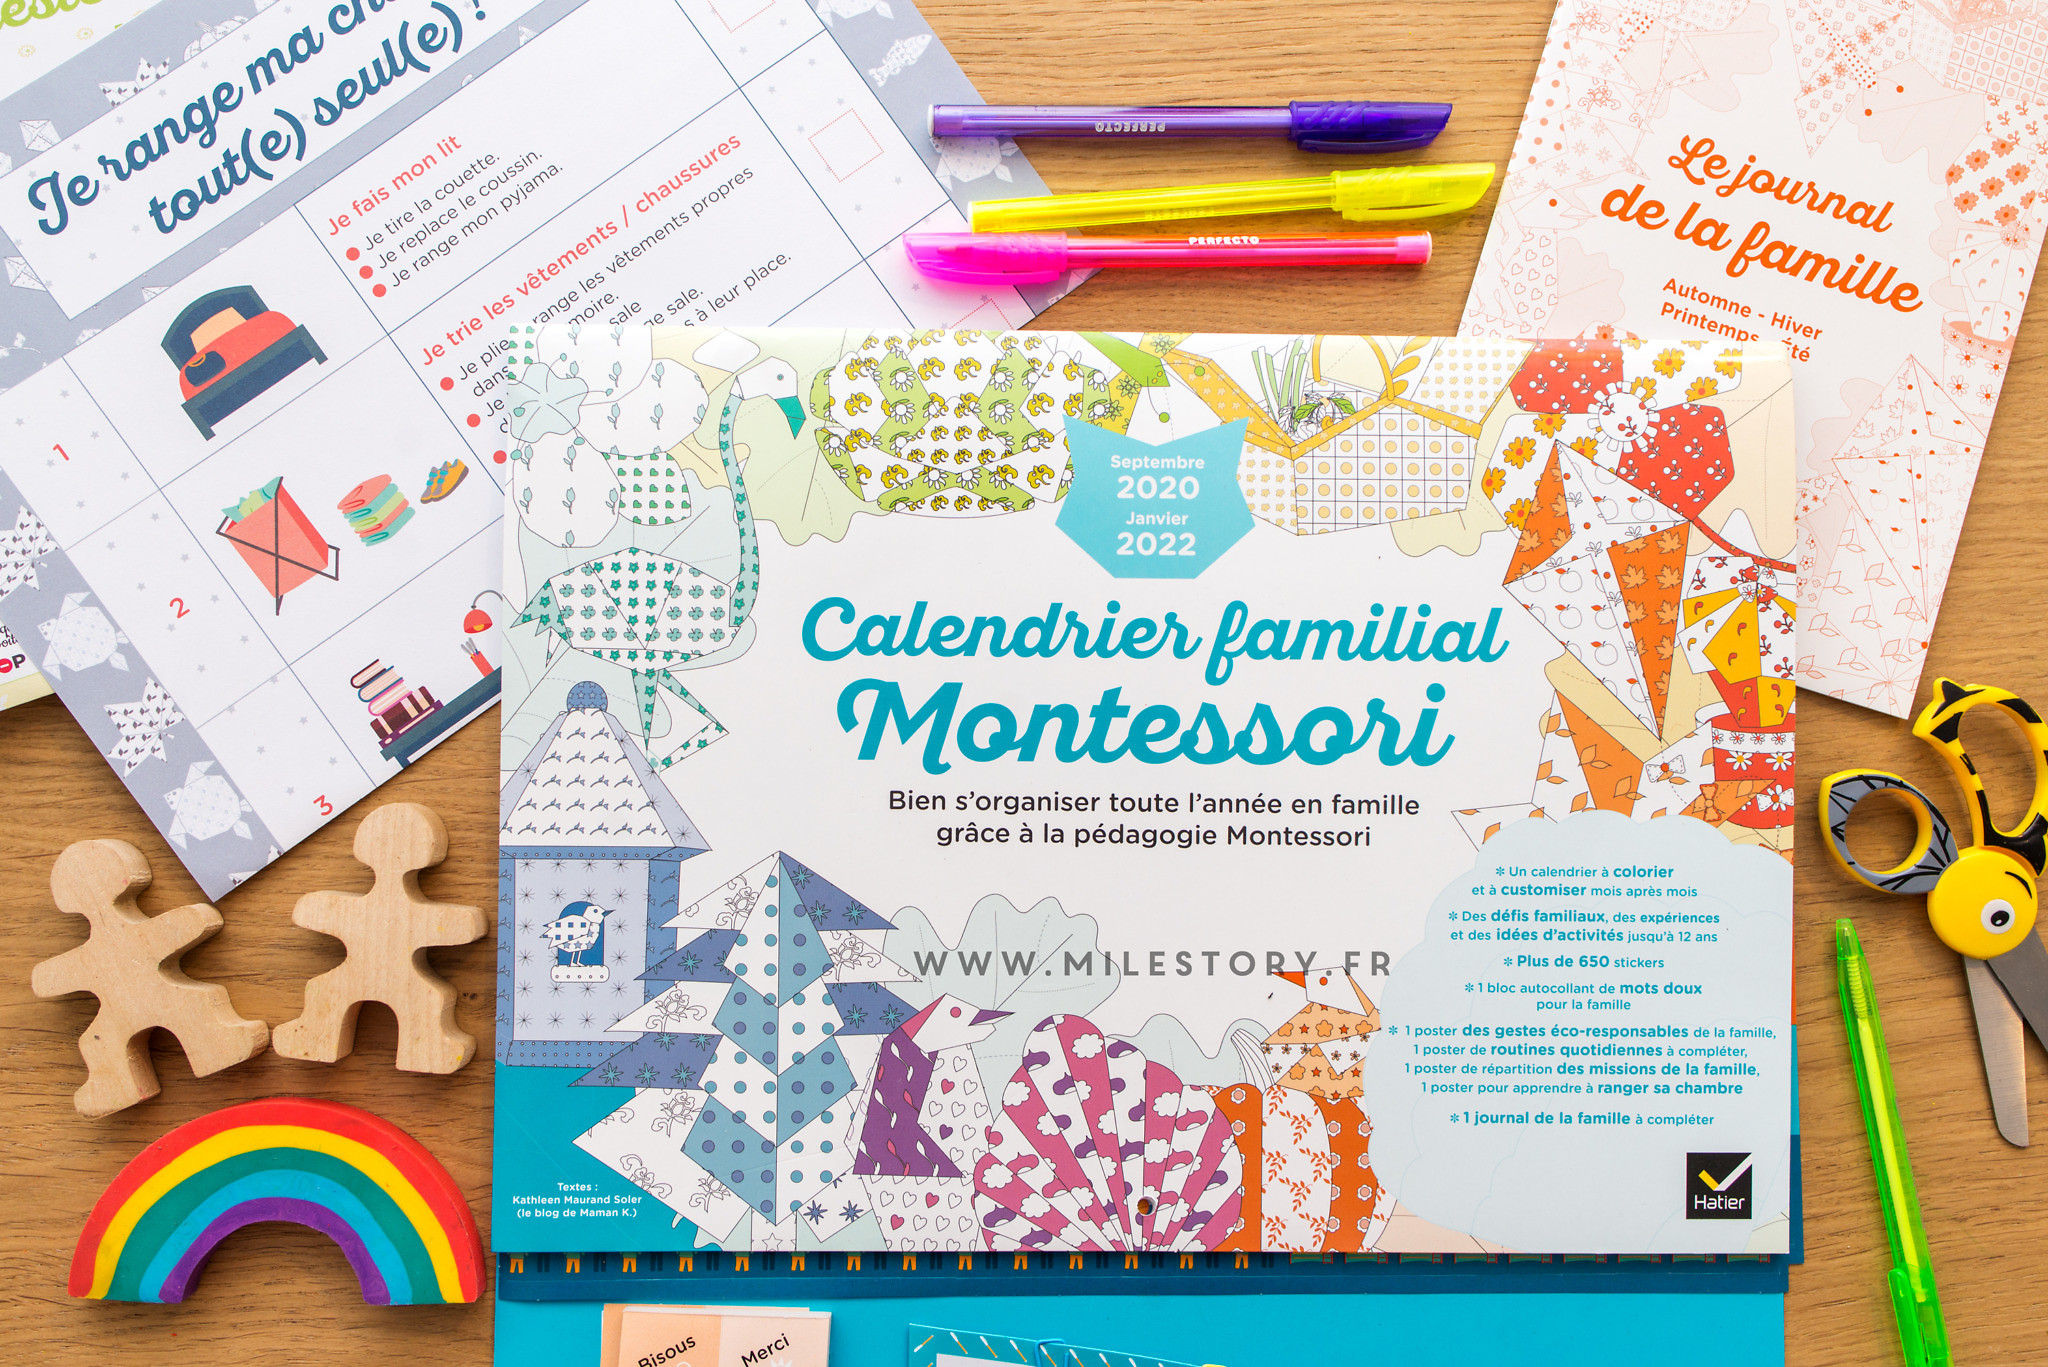 Calendrier familial Montessori 2020-2022 - Milestory.fr